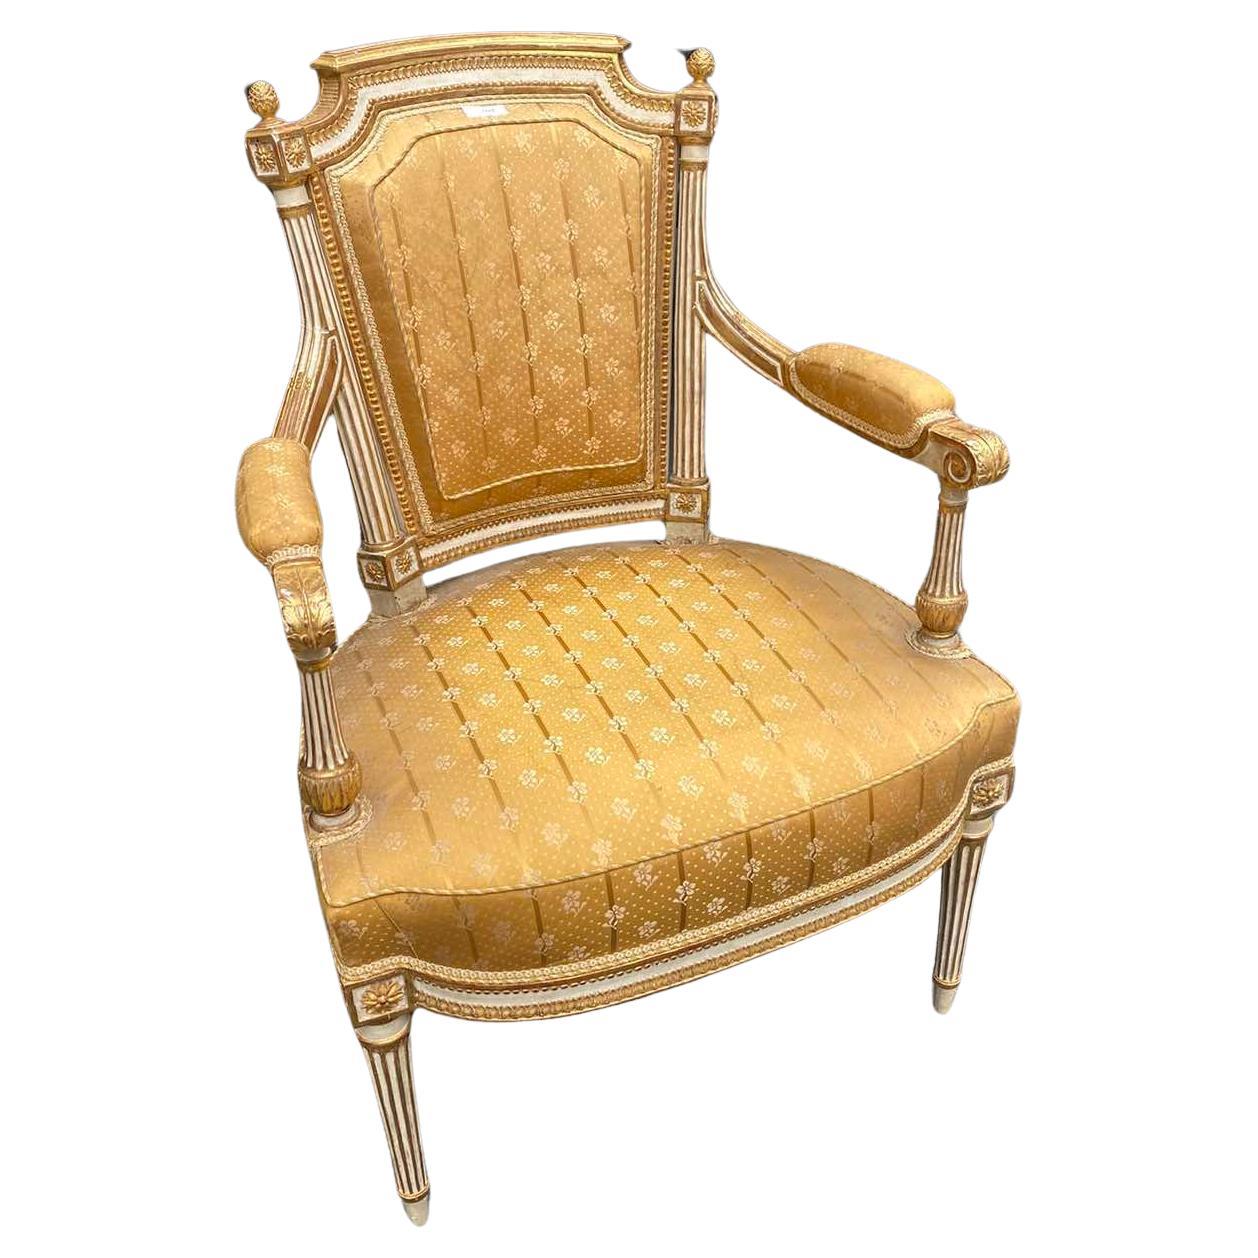 Seltener authentischer Sessel von Jean-Baptiste Boulard aus dem späten 18. Jahrhundert. Es ist ein sehr schönes Stück handgeschnitzt und handbemalt mit großen Details in gelber bis goldener Seide von Lelievre gepolstert. Sehr guter Zustand, keine